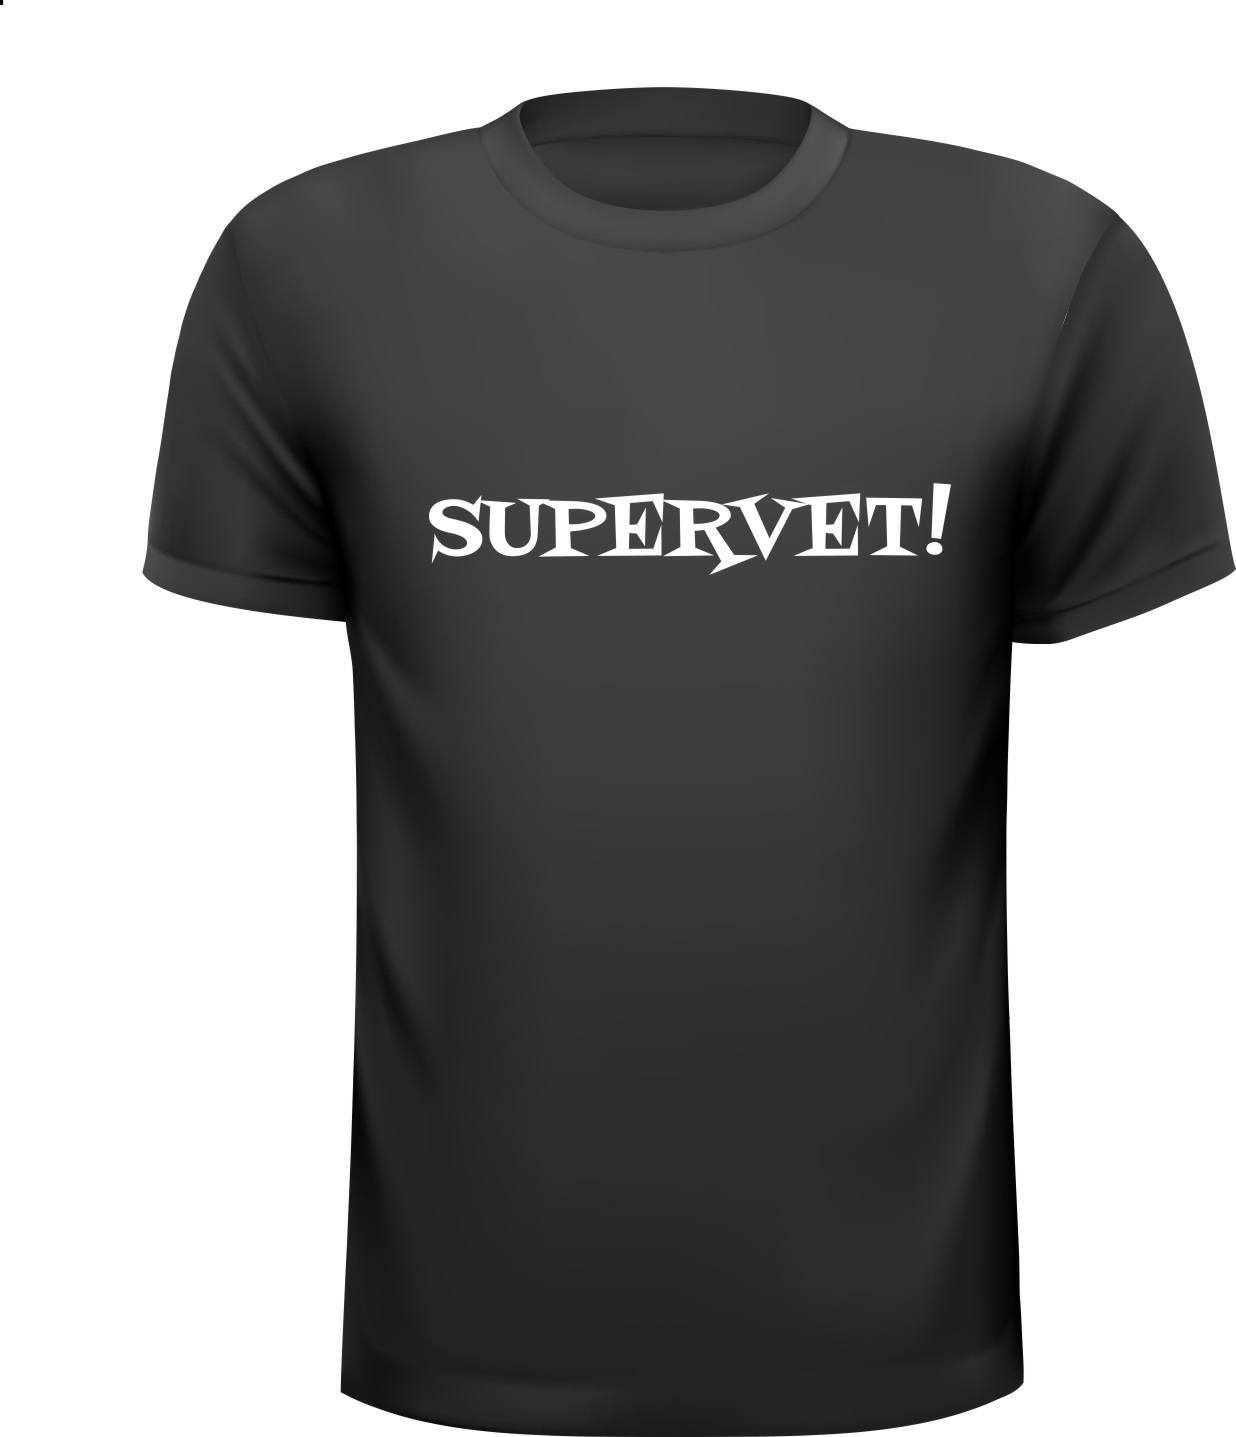 Supervet T-shirt